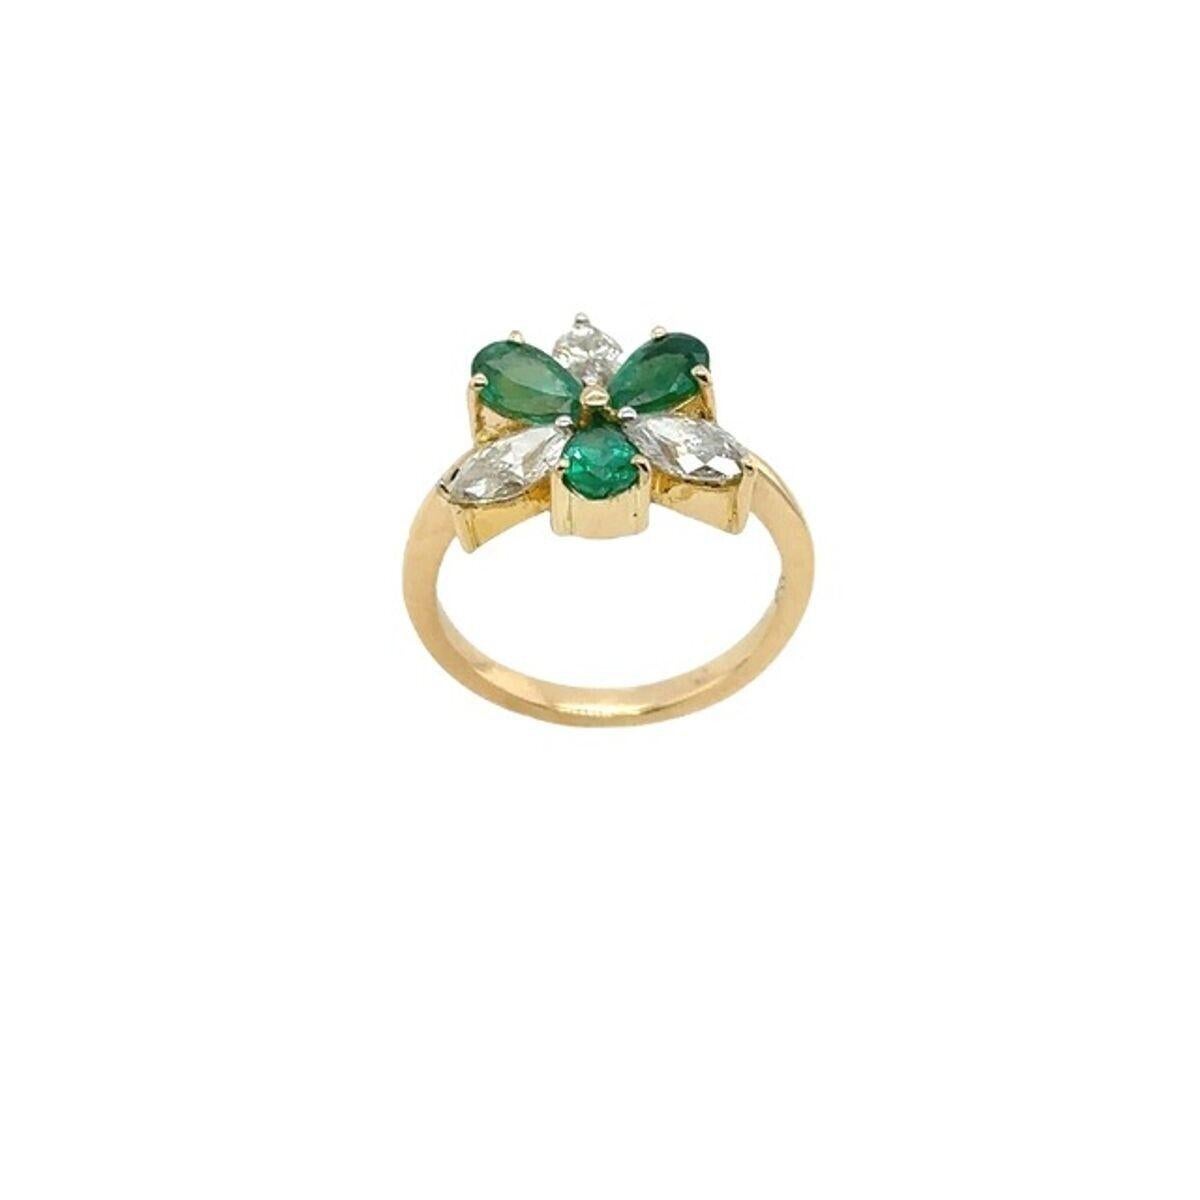 Dieser wunderschöne Ring mit Smaragd und Diamant ist in 18 Karat Gelbgold gefasst. Mit 3 natürlichen Diamanten im Marquiseschliff, 1,0ct Gesamtgewicht und 3 birnenförmigen Smaragden, 1,0ct Gesamtgewicht. Dies ist ein einzigartiger und auffälliger